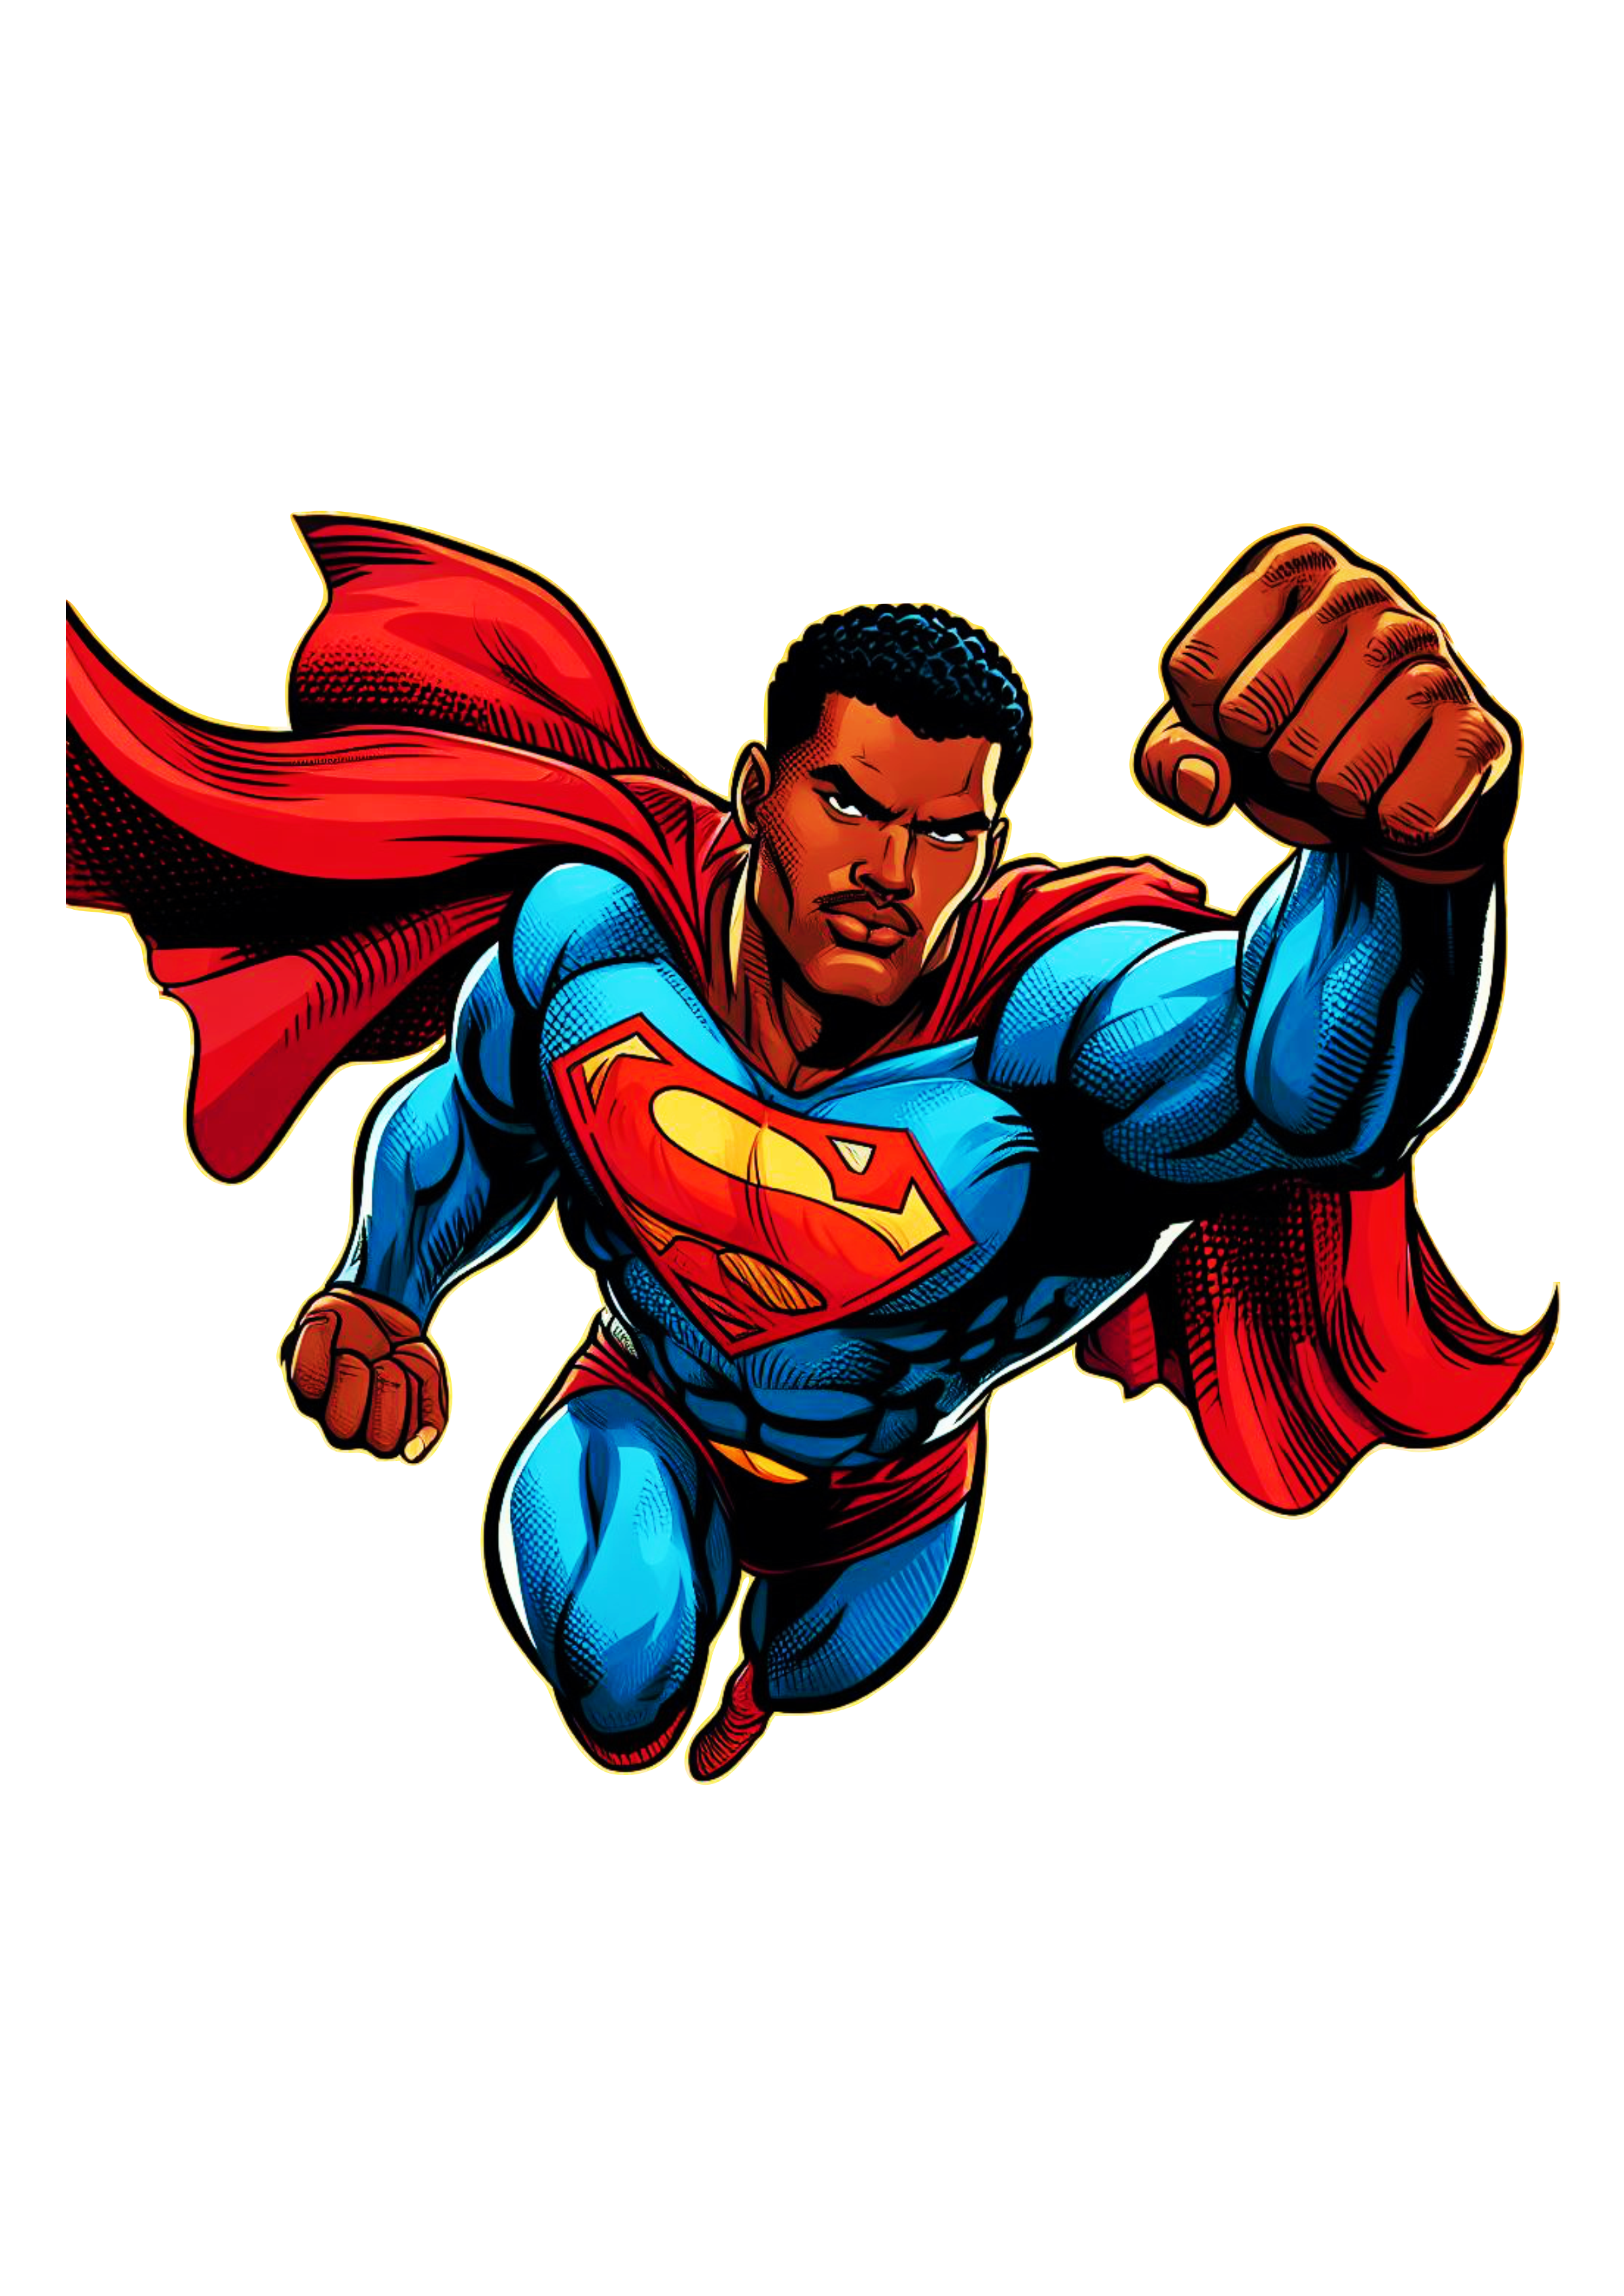 Super homem negro heroi dc comics quadrinhos  png